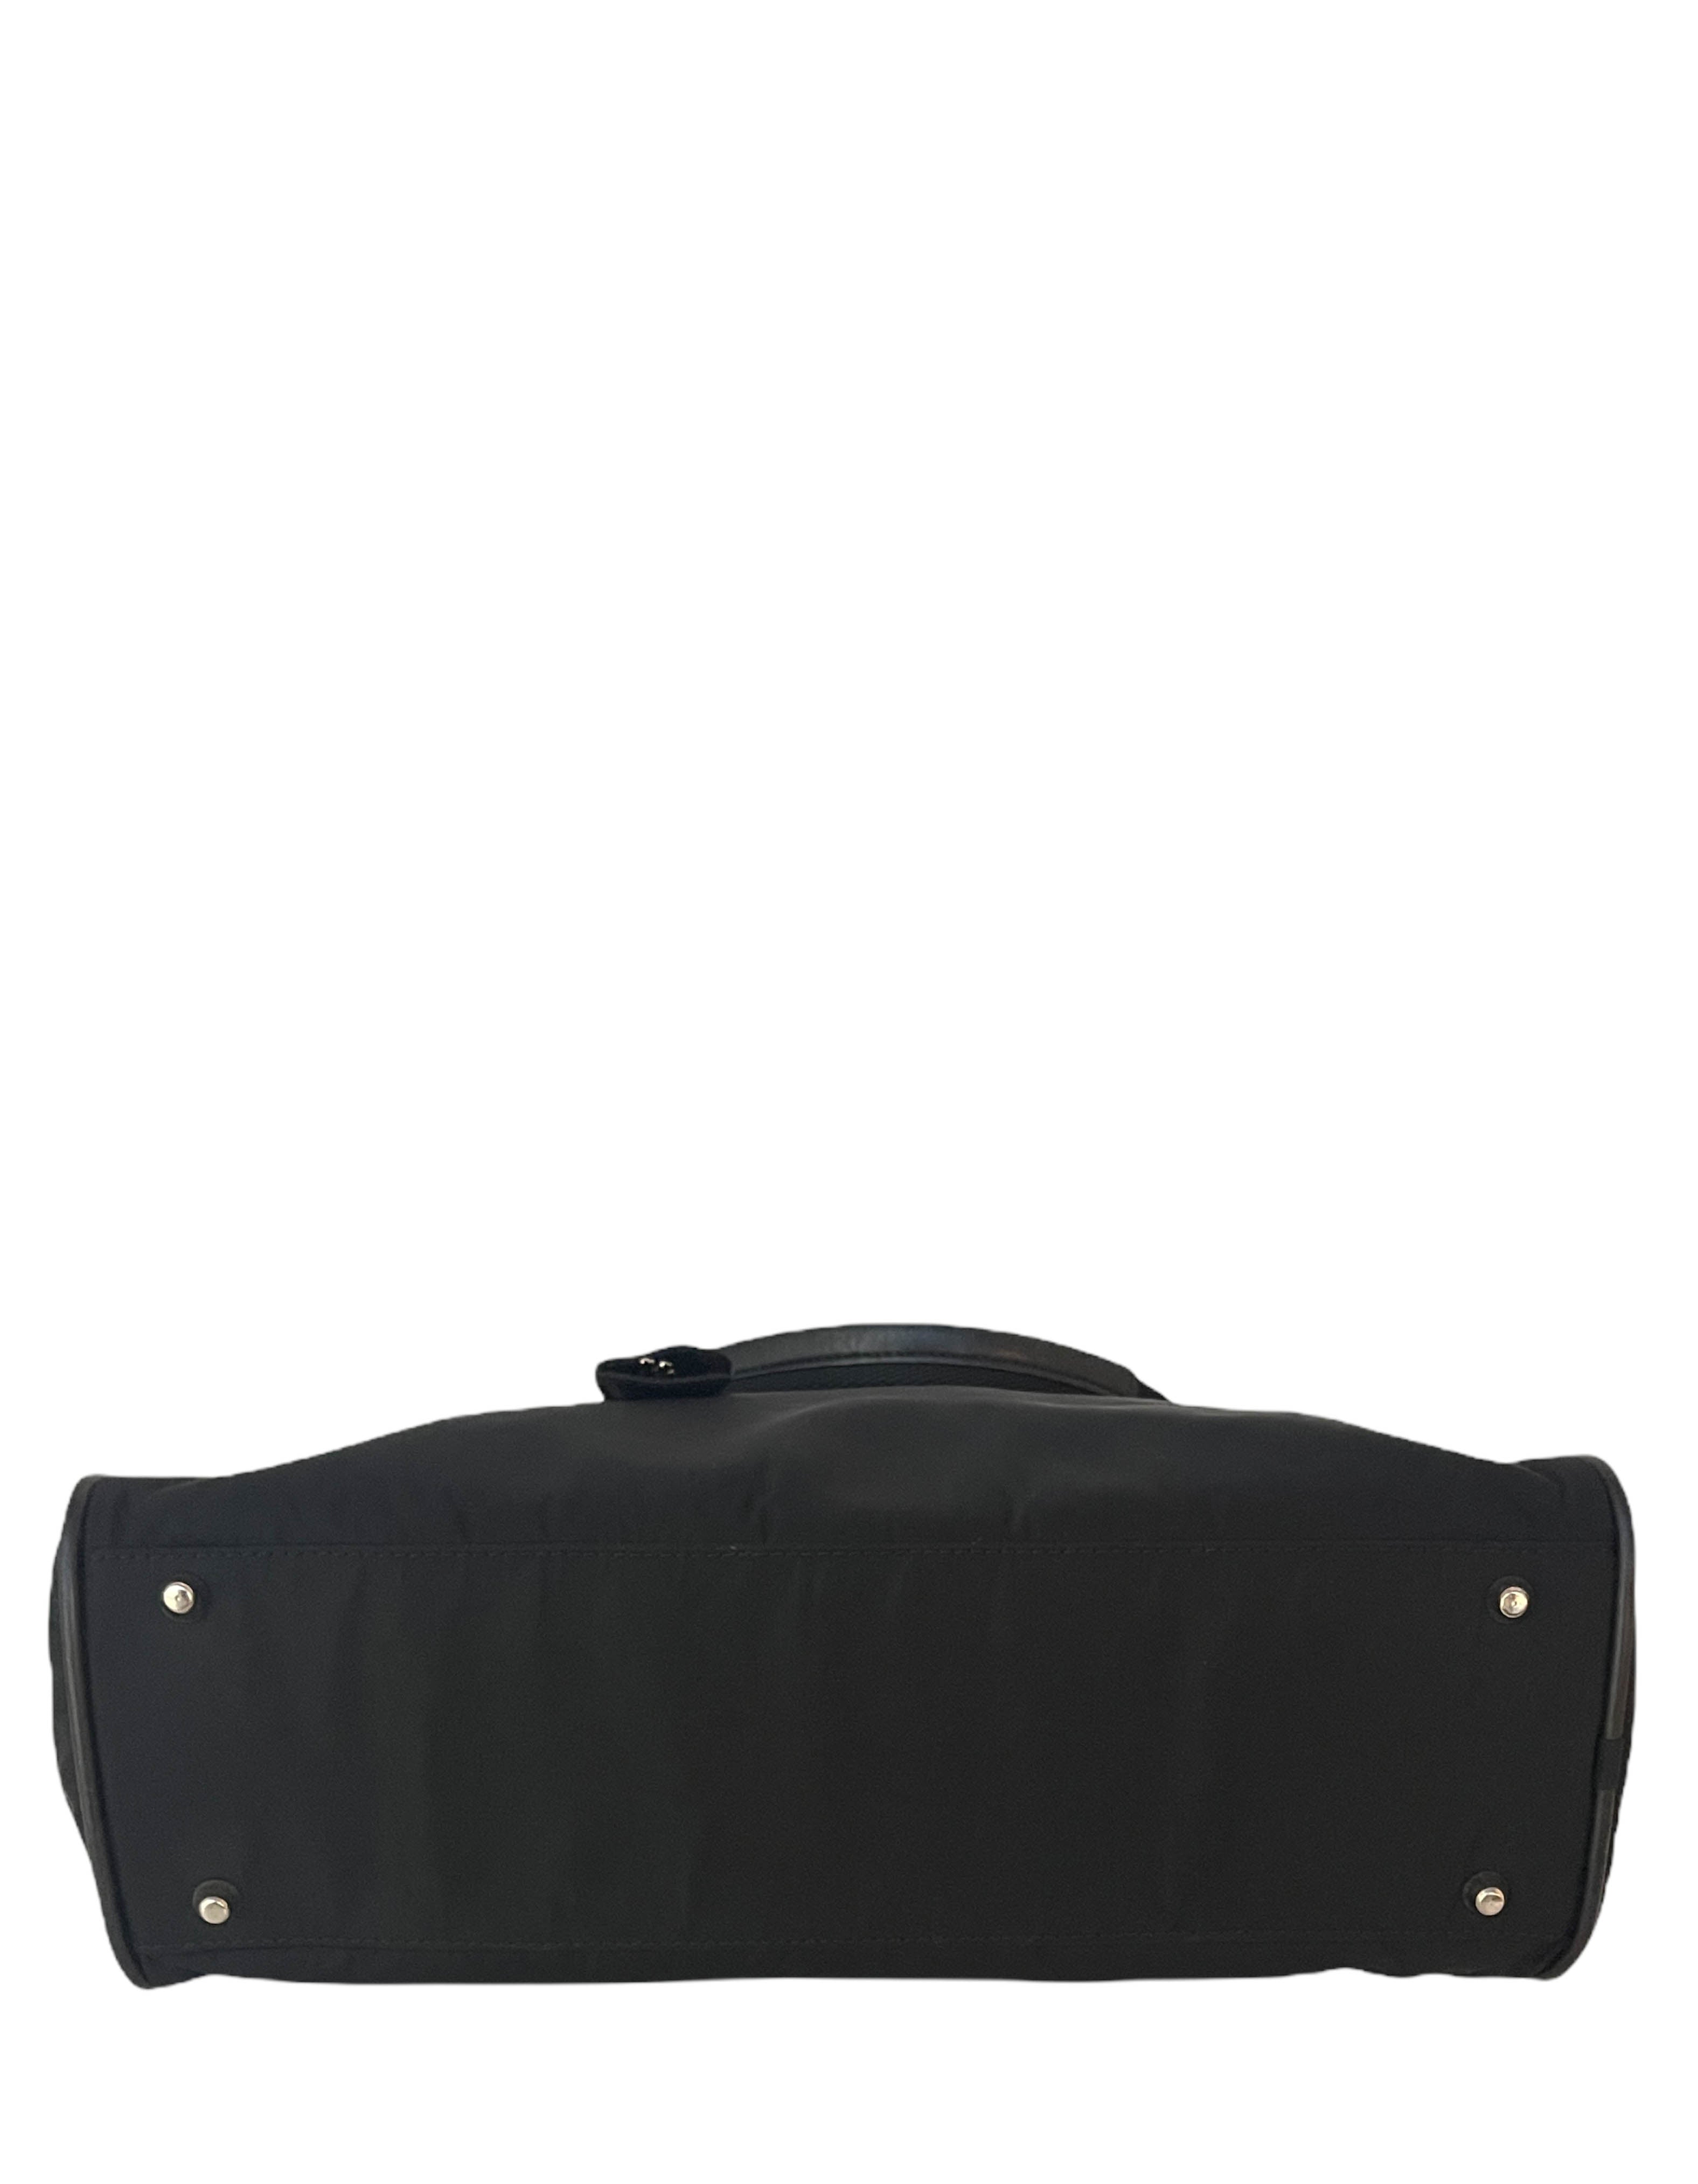 Prada Vintage Black Tessuto Nylon Handbag